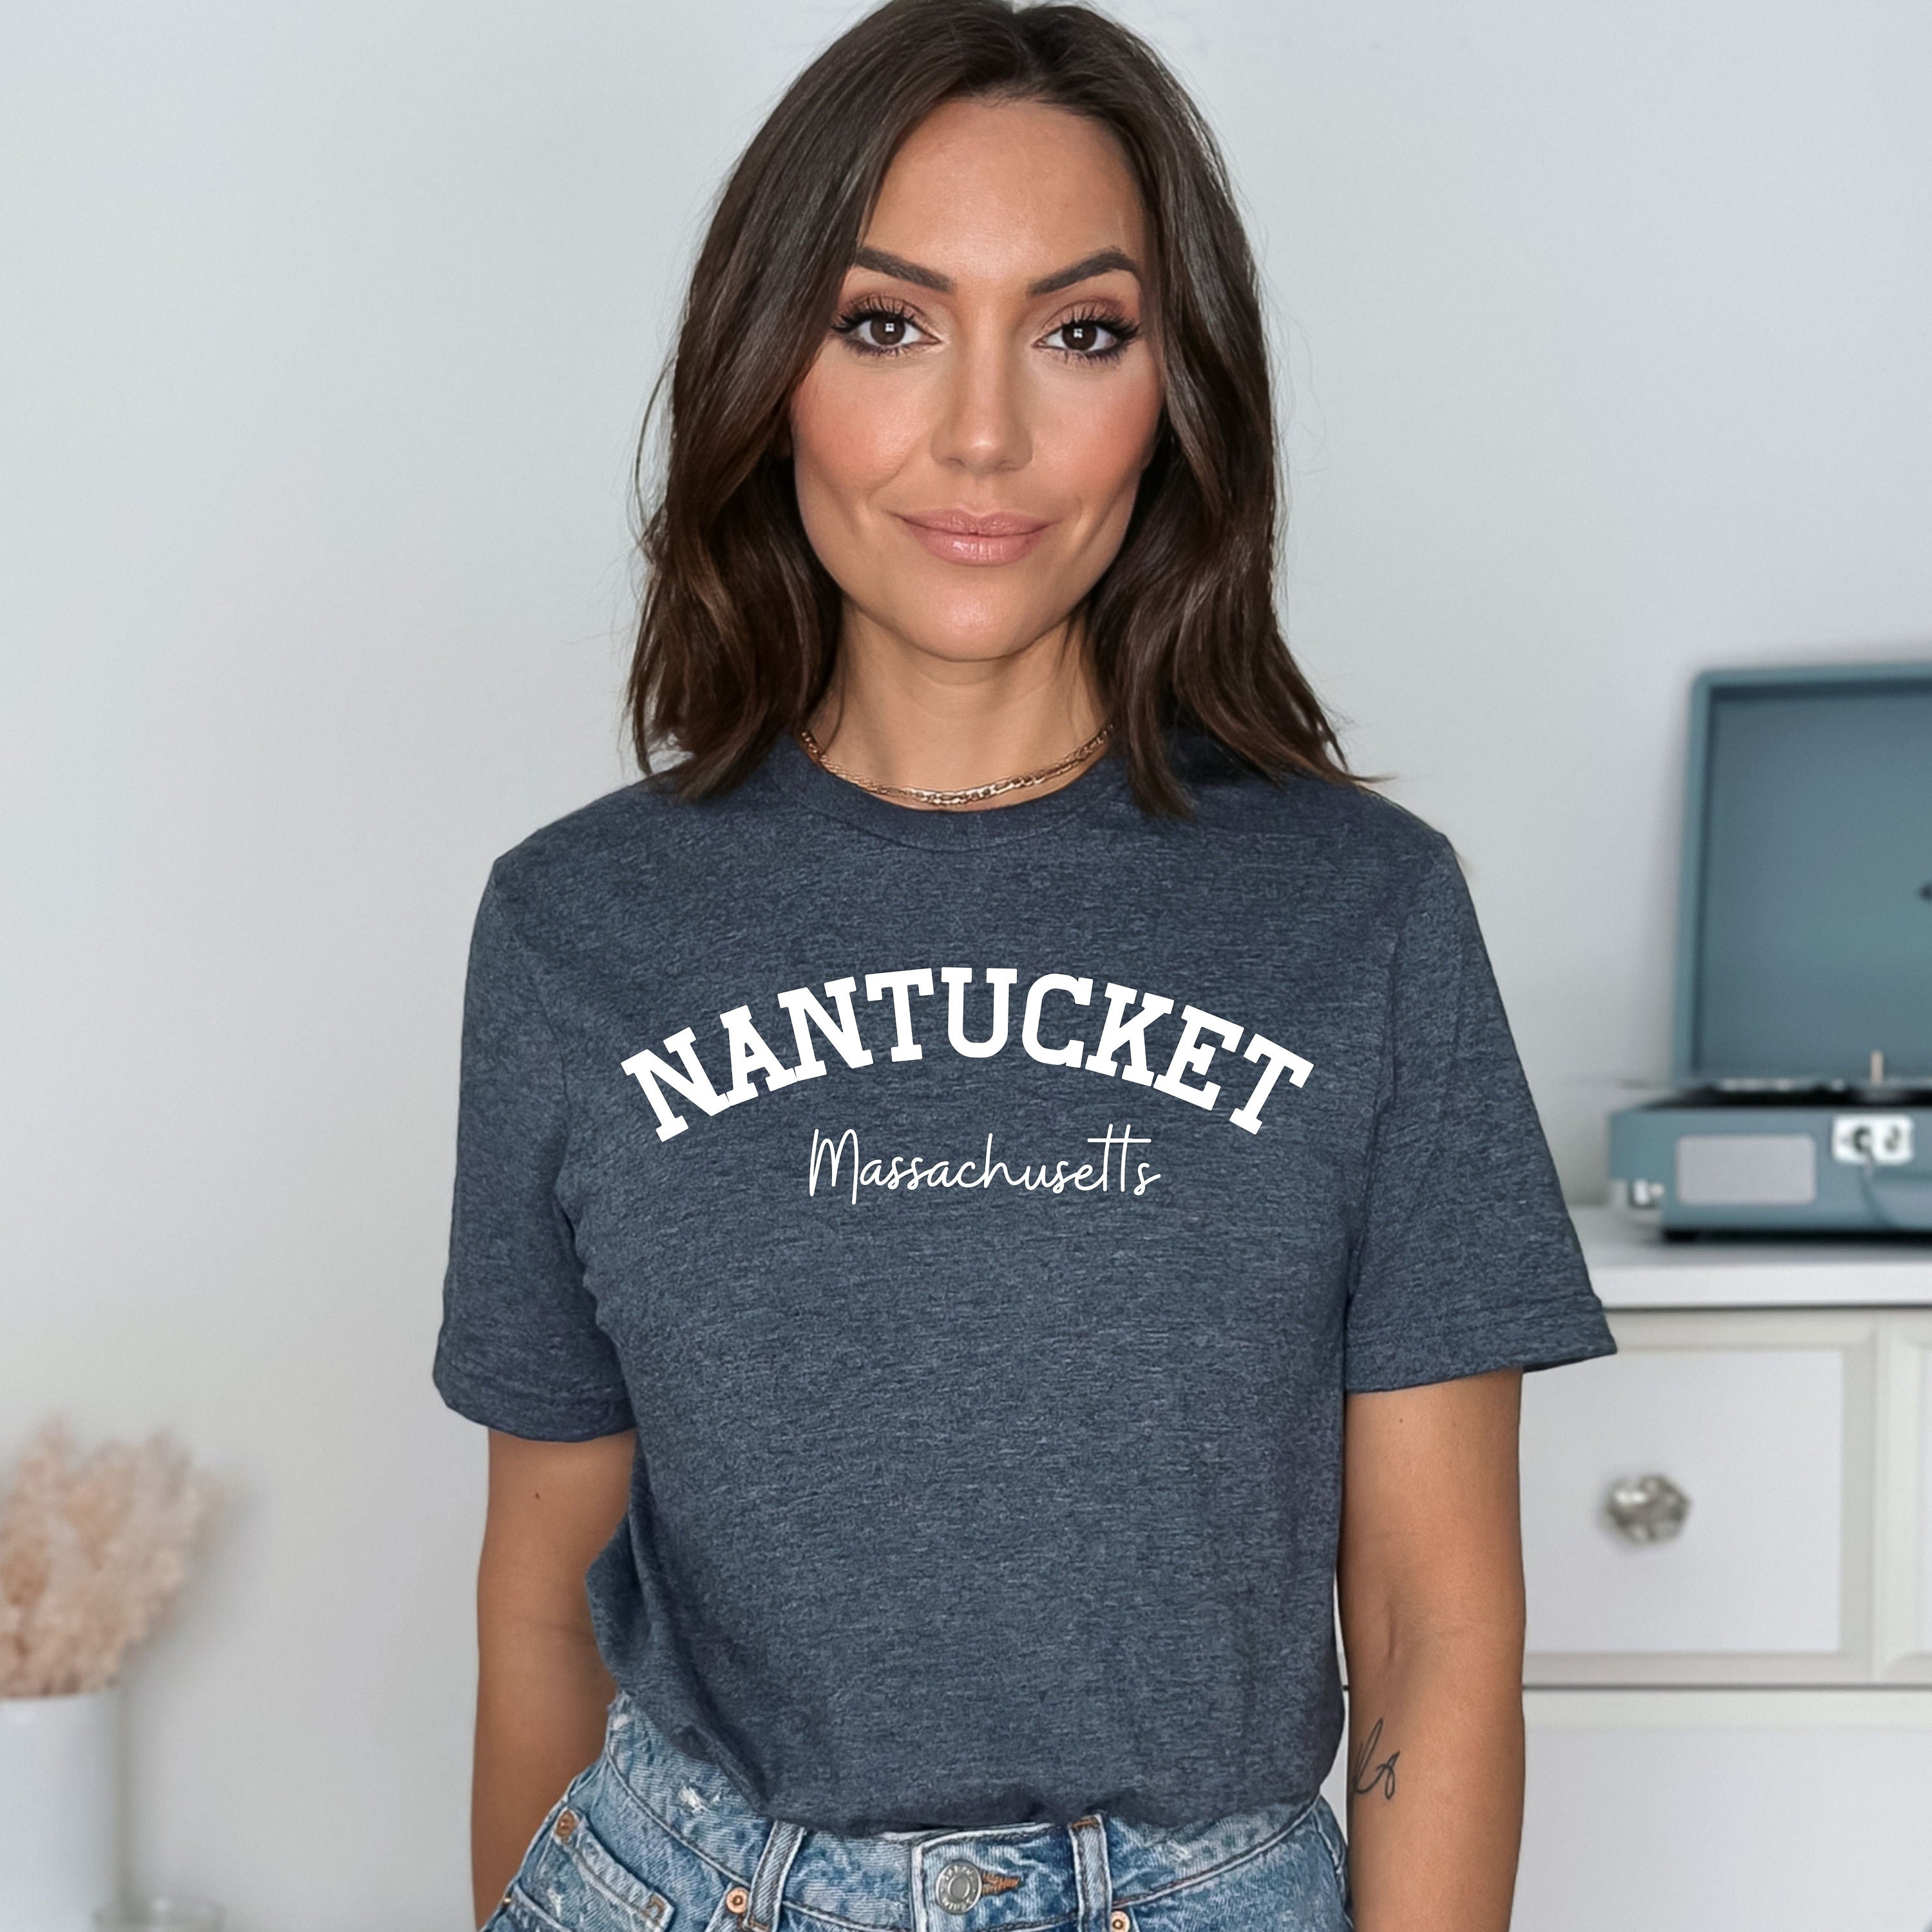 Nantucket Summer Vacation Softstyle Tee Shirt Gift Nantucket - Etsy